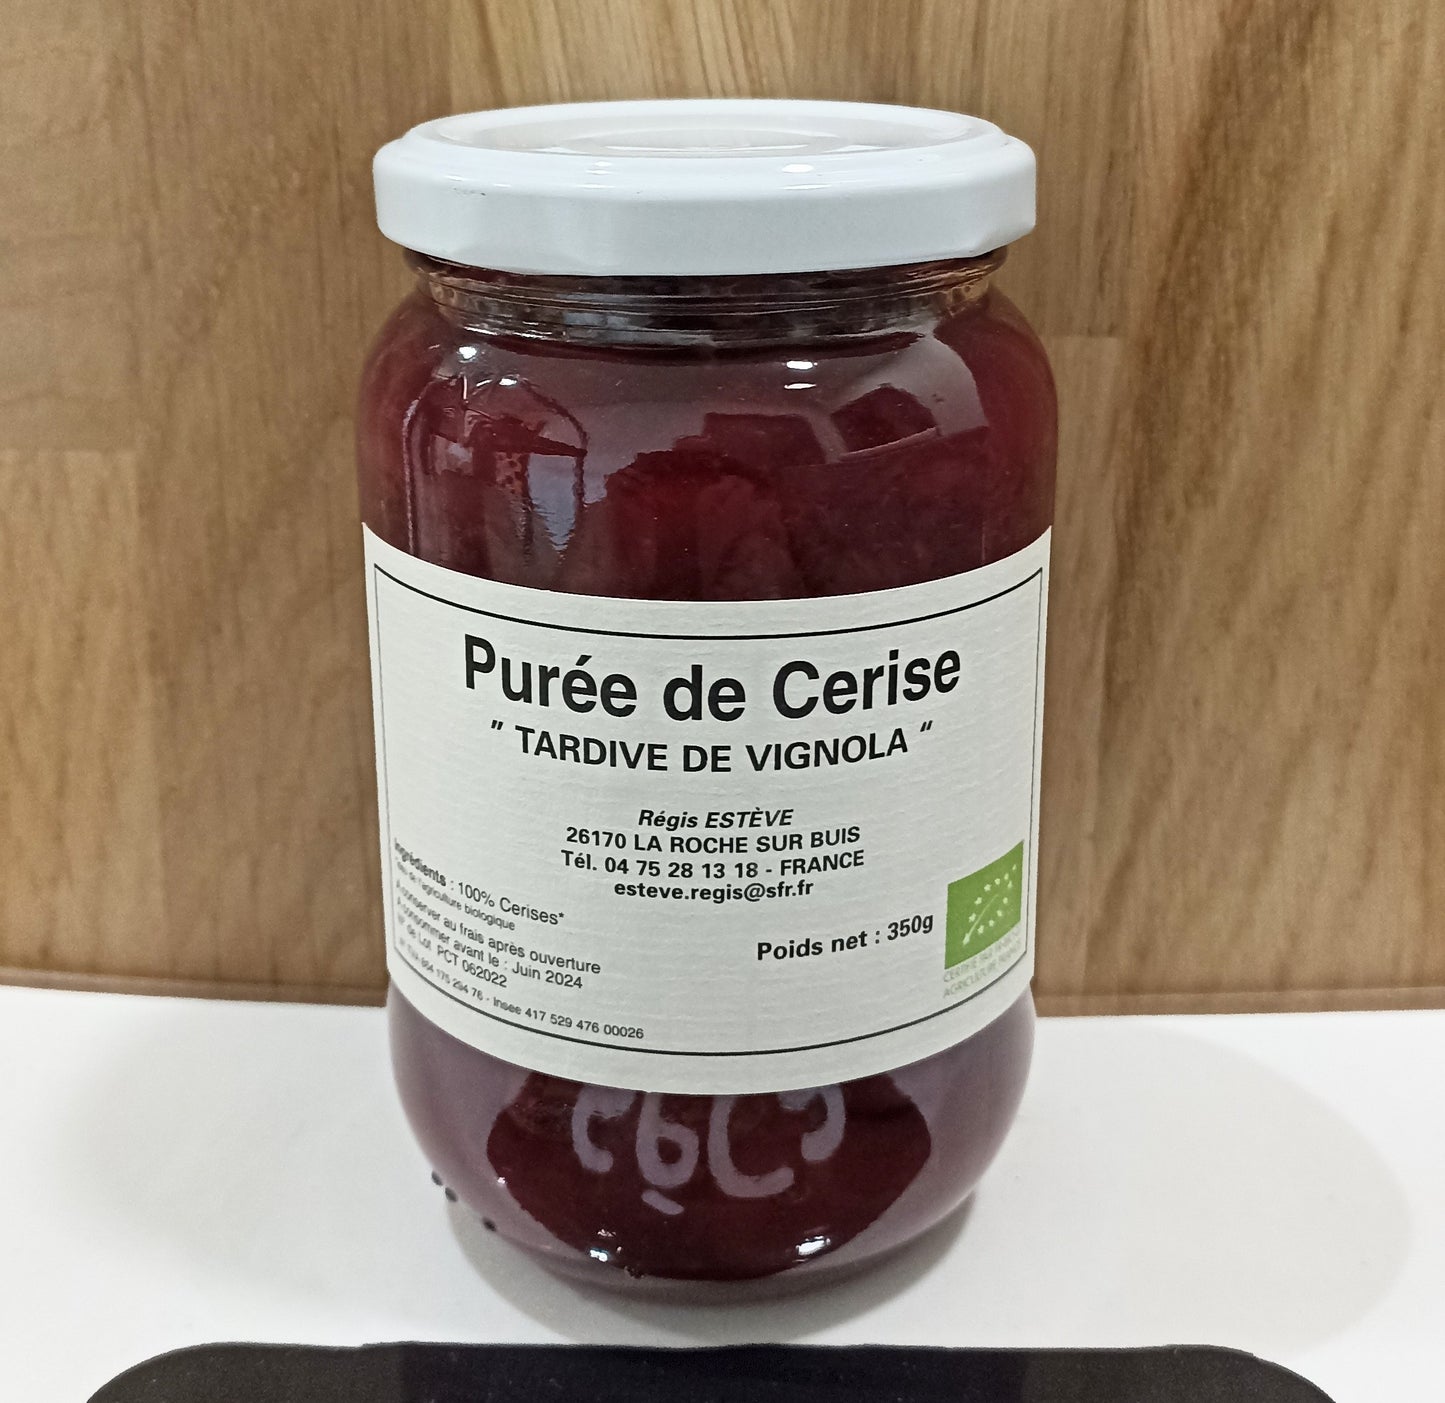 Purée de Cerise "Tardive de Vignola" bio (100% fruit) en pot de 350 g